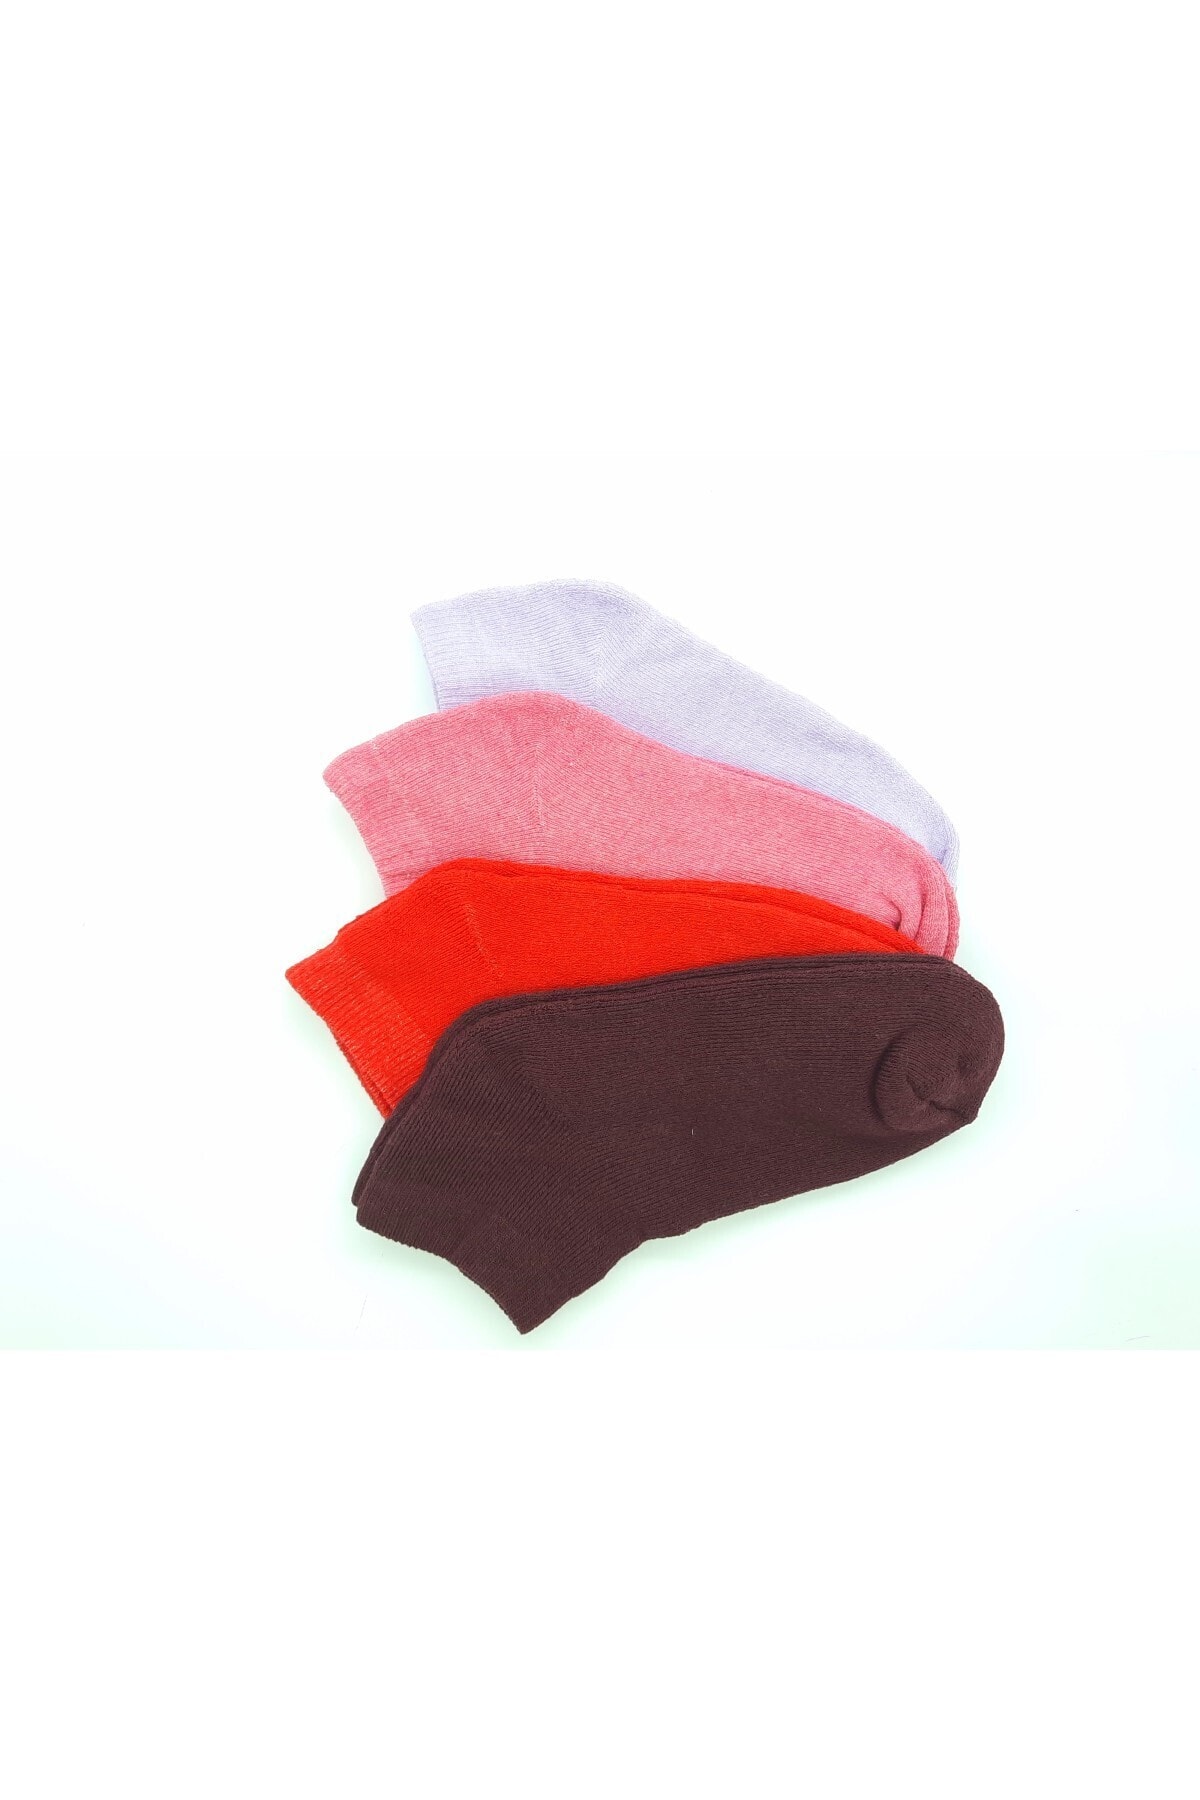 Black Arden Socks Renkli Desensiz Havlu Kadın Patik 4'lü 36-40